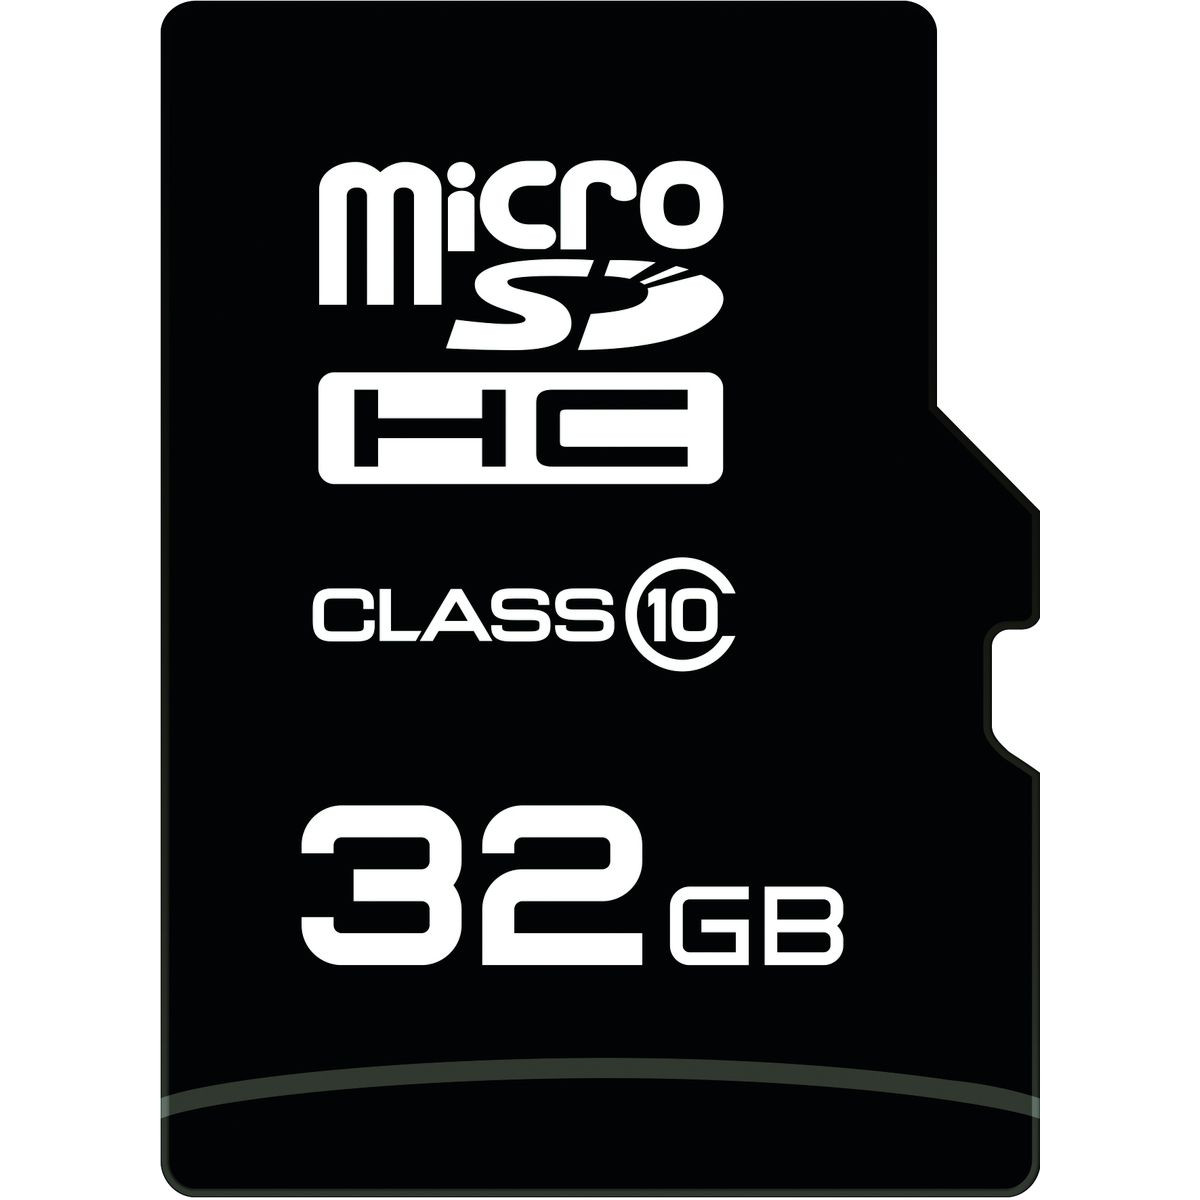 QILIVE Micro SDXC - 32 Go - Adaptateur SD - Carte mémoire pas cher 